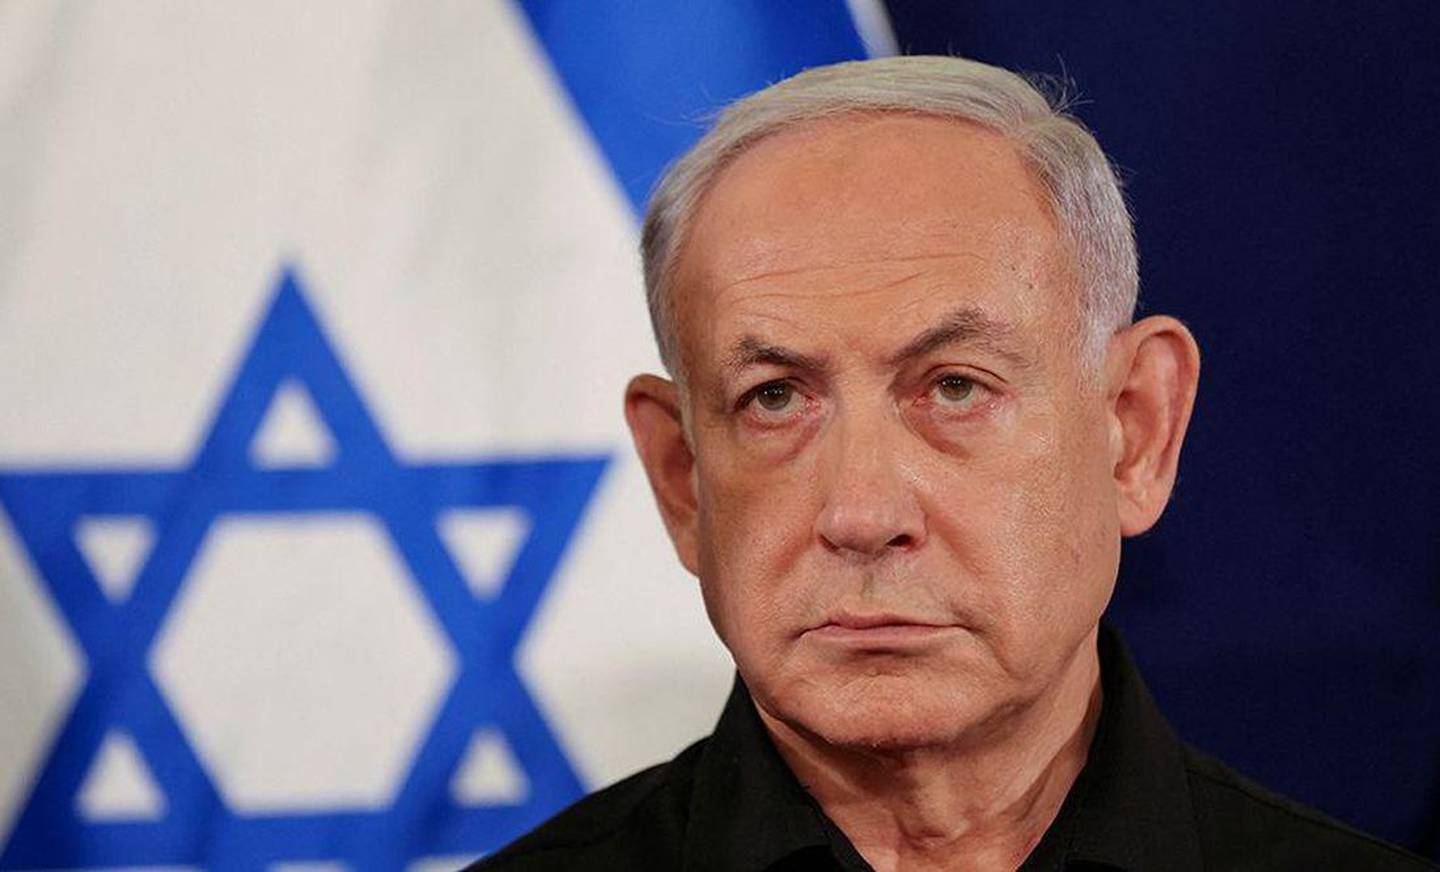 El primer ministro de Israel insistió en que el Estado hebreo debe preservar su derecho a la autodefensa, tras la oleada de ataques que lanzó Teherán la madrugada del sábado.